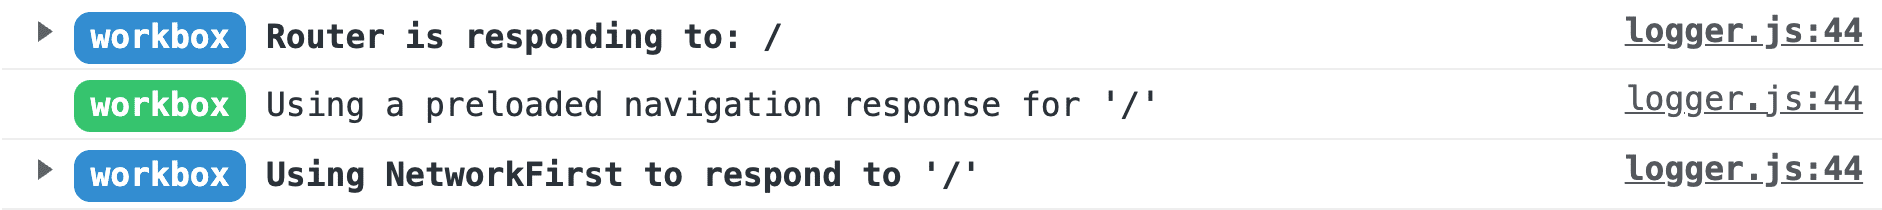 تصویری از گزارش‌های Workbox در کنسول DevTools کروم. پیام‌ها از بالا به پایین خوانده می‌شوند: «روتر به / پاسخ می‌دهد»، «استفاده از یک درخواست ناوبری از پیش بارگذاری‌شده برای /»، و «استفاده از NetworkFirst برای پاسخ به /»